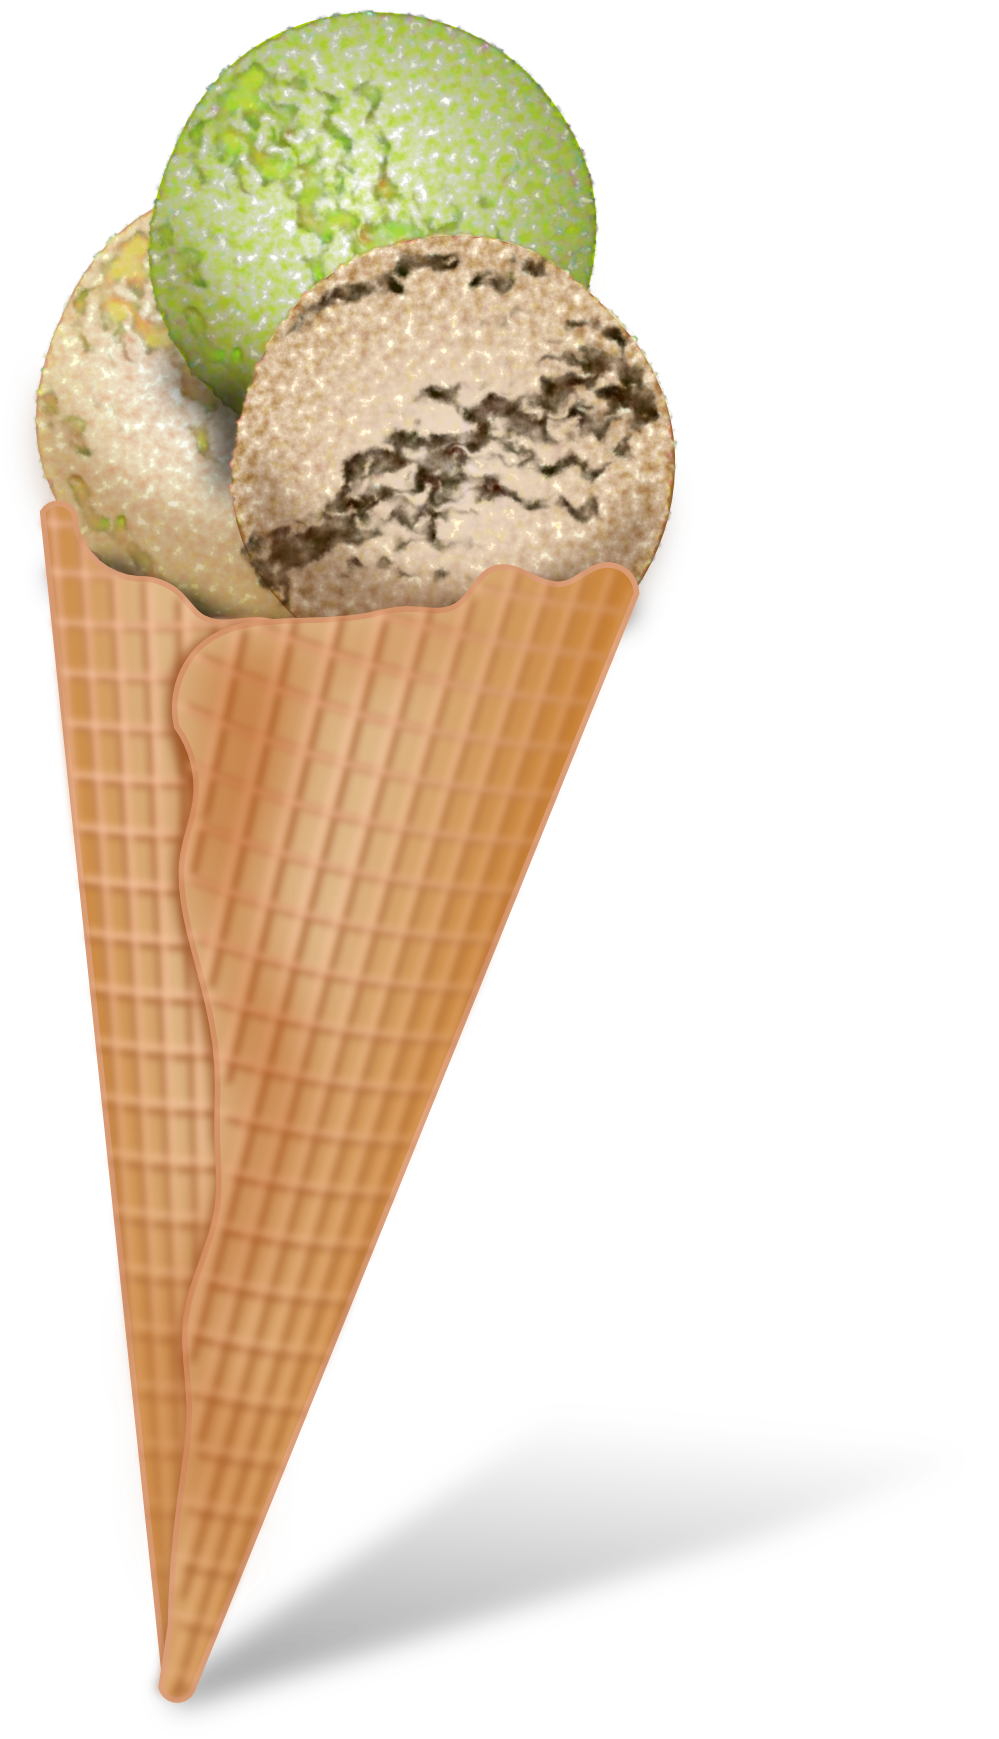 Ice cream cone ice cream4